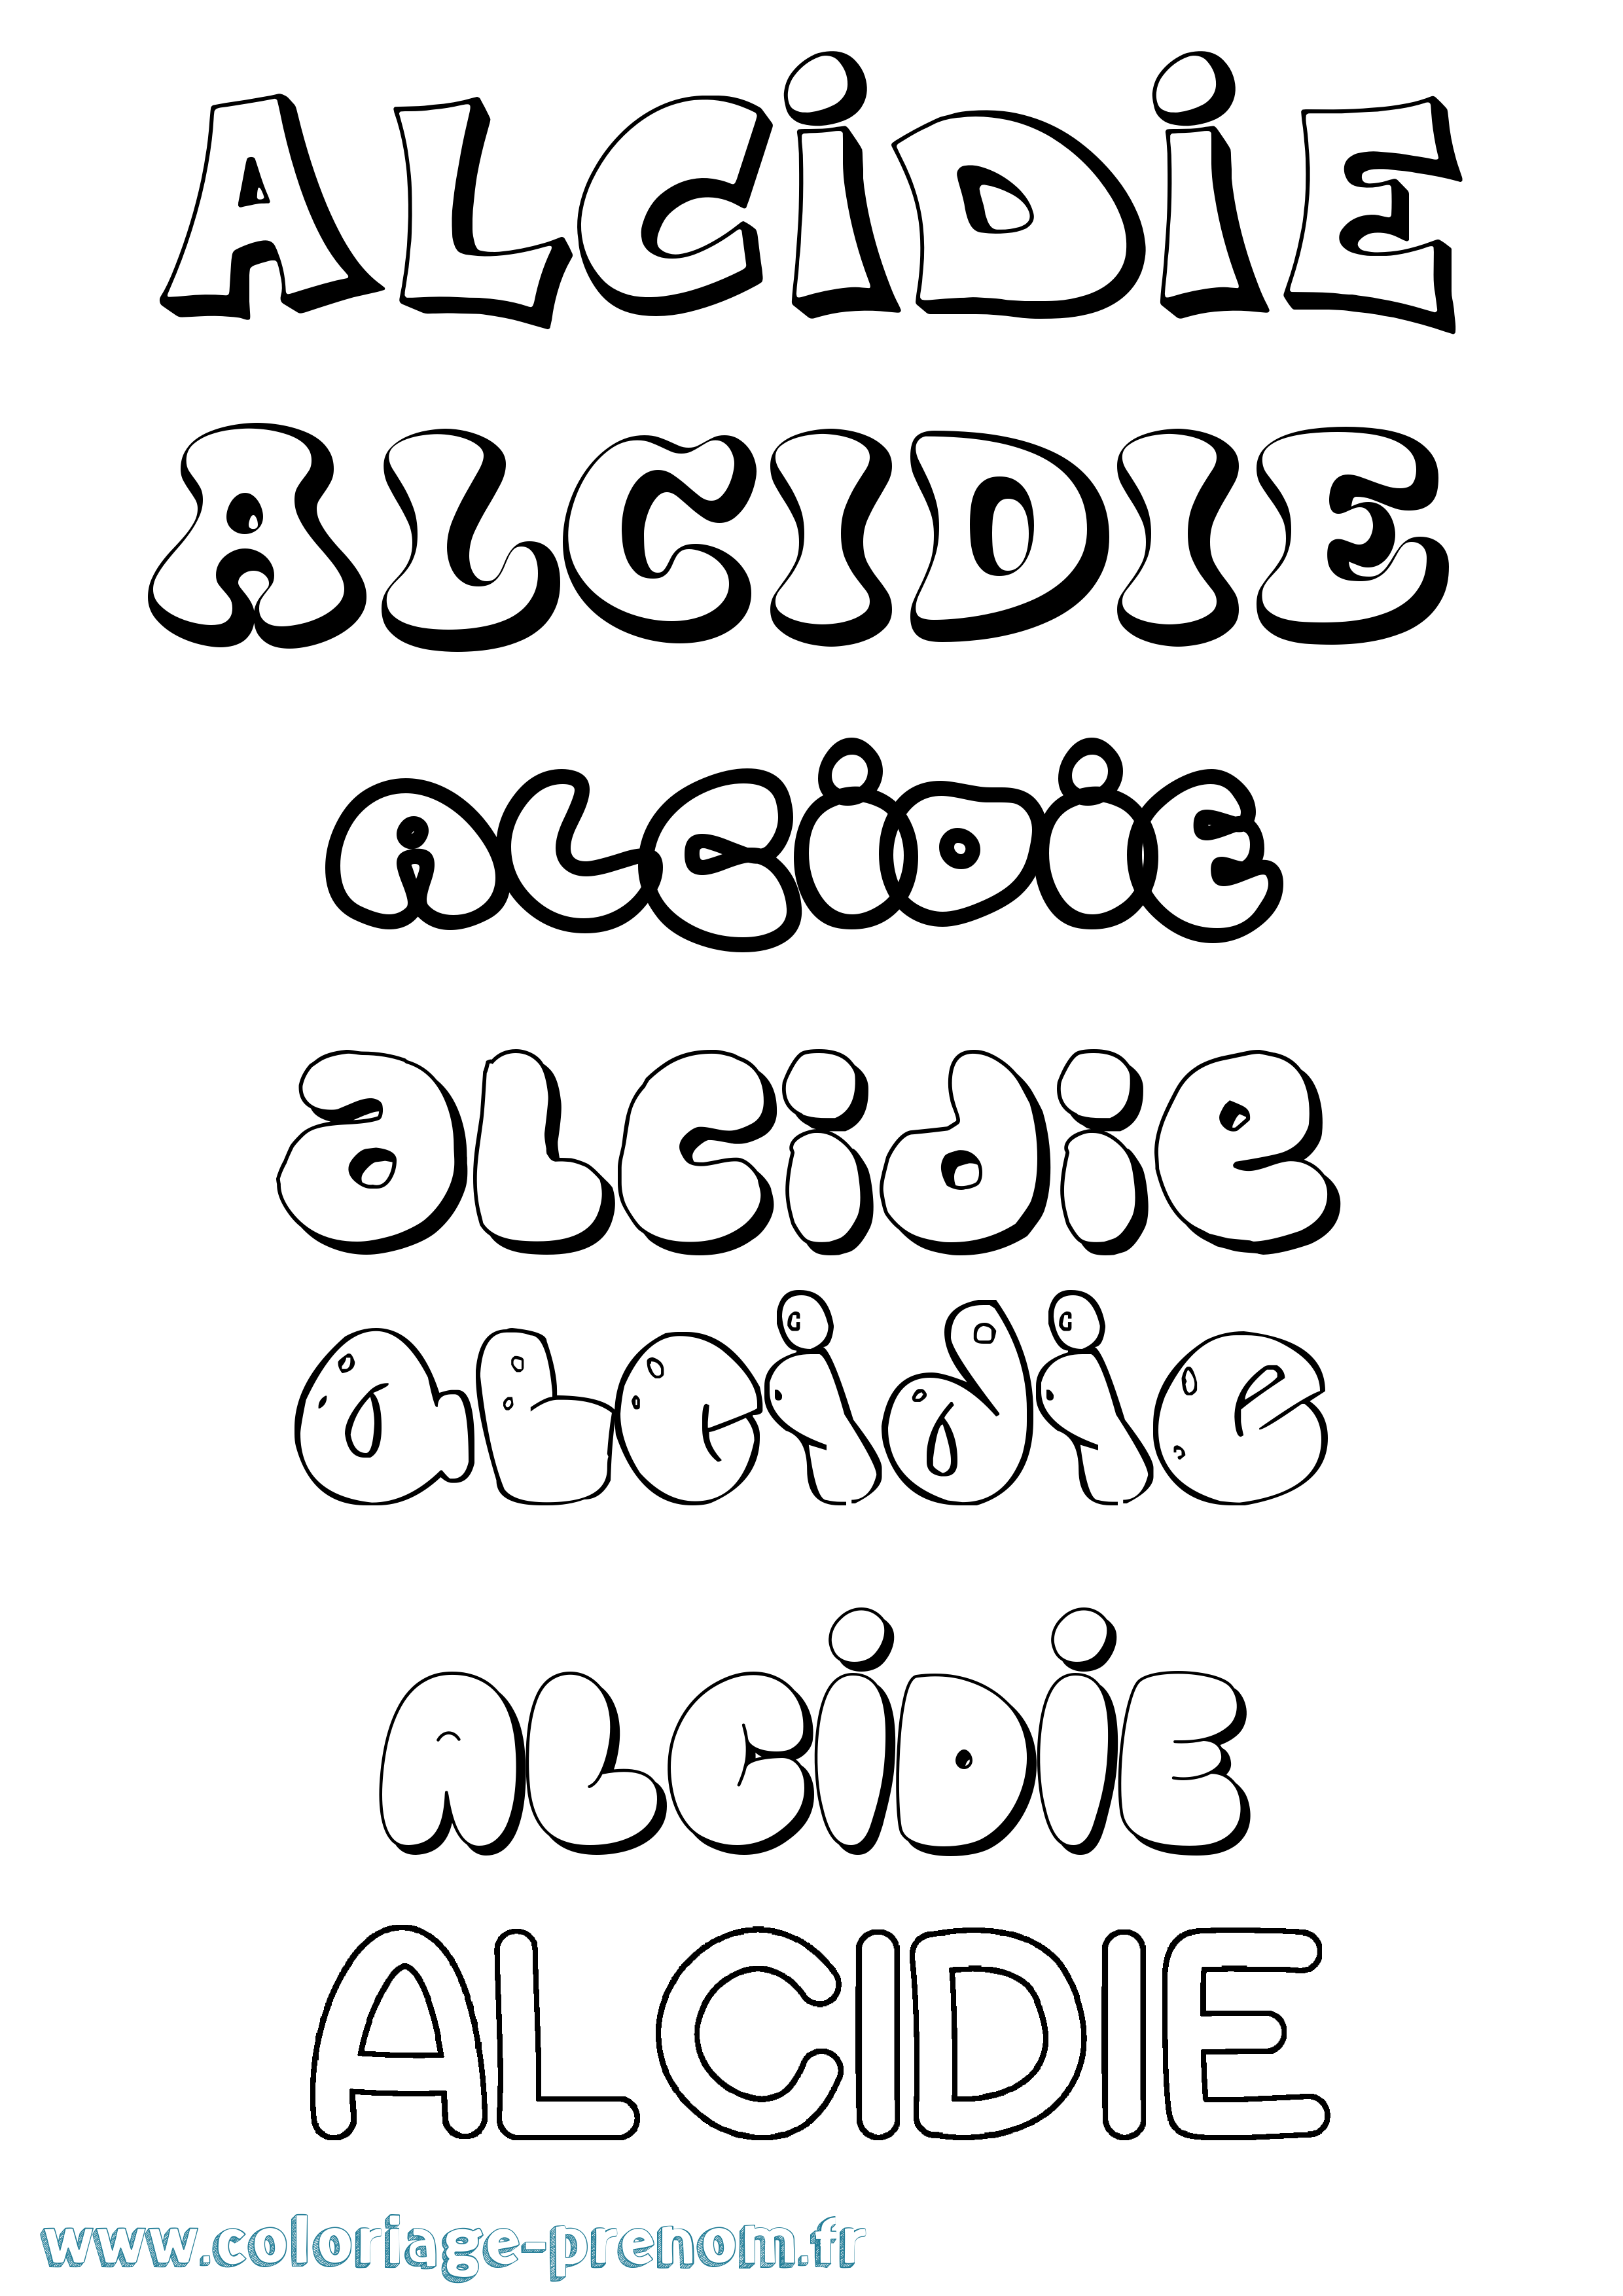 Coloriage prénom Alcidie Bubble